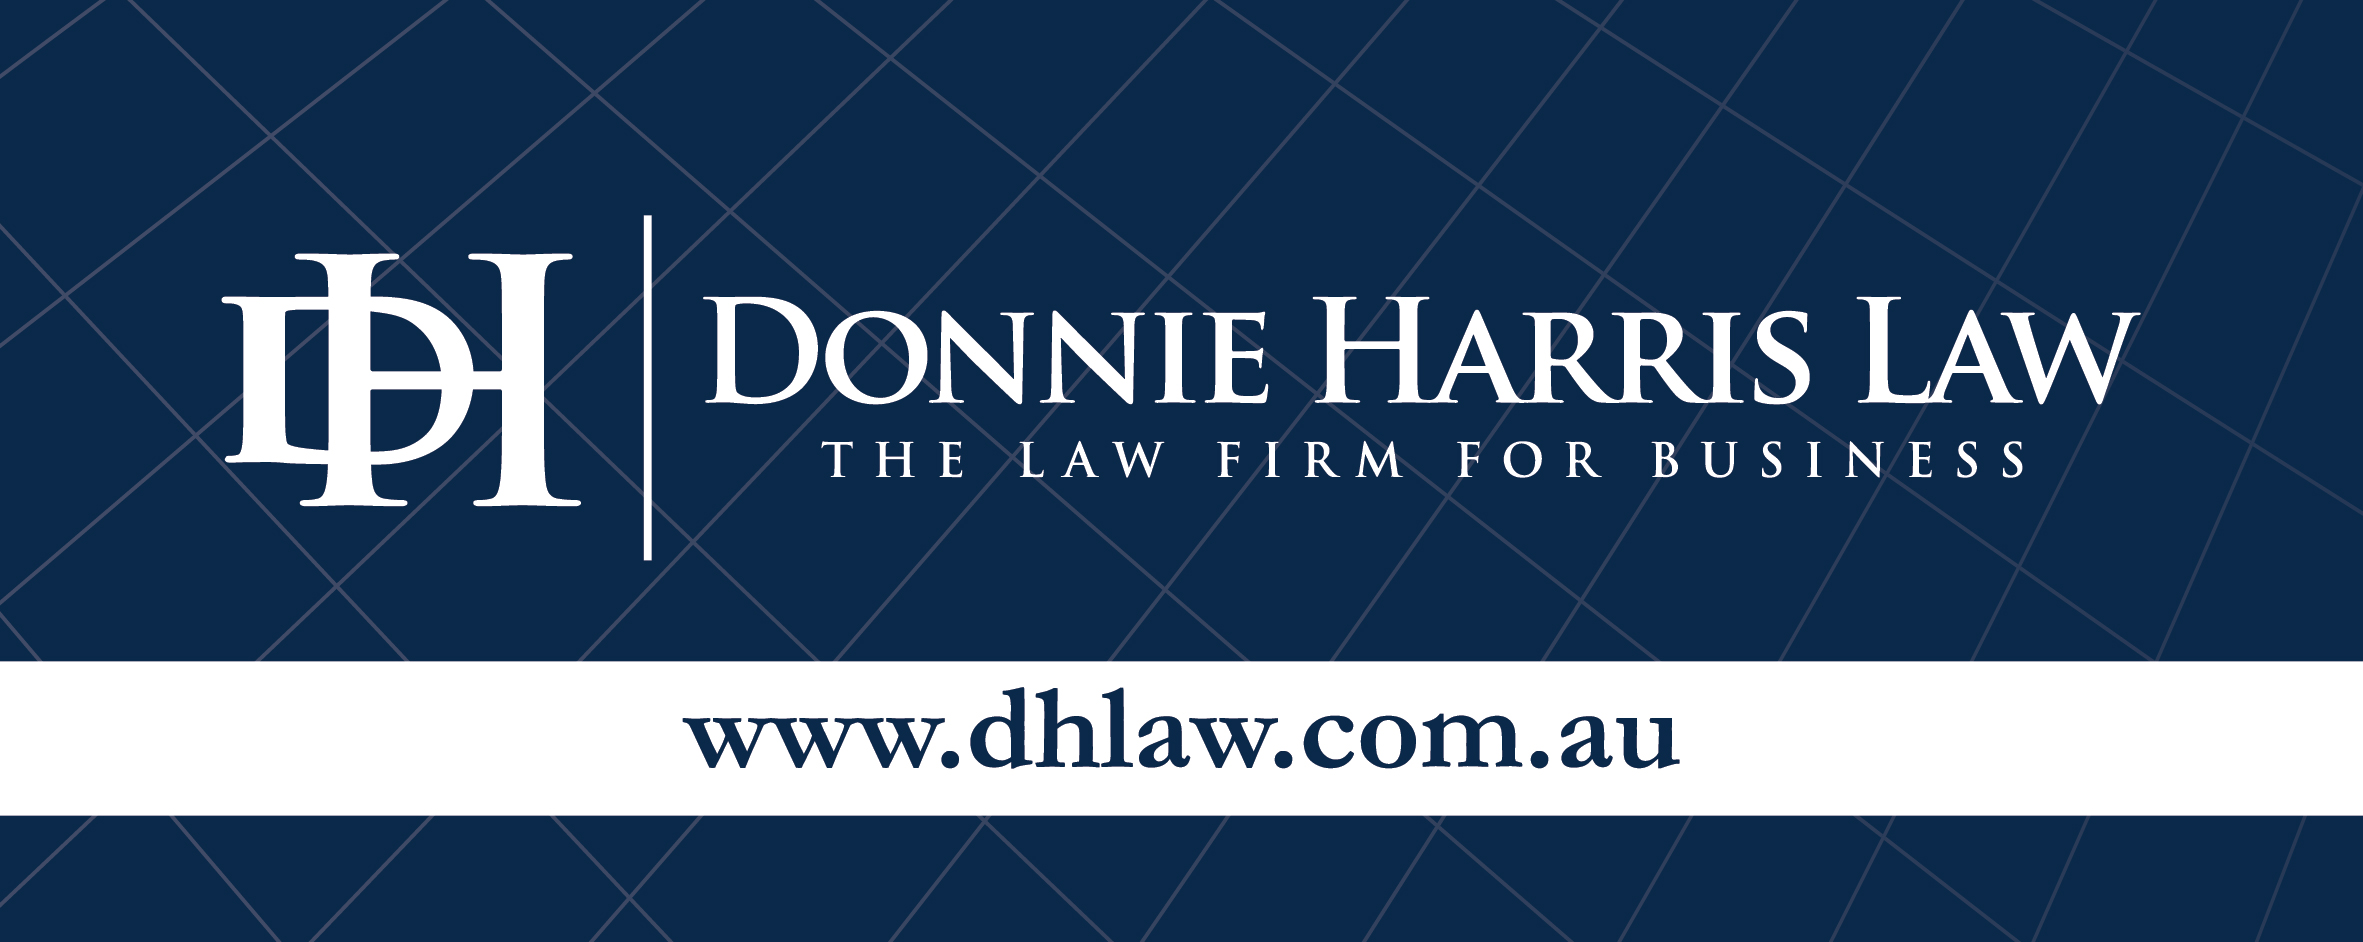 Donnie Harris Law.jpg